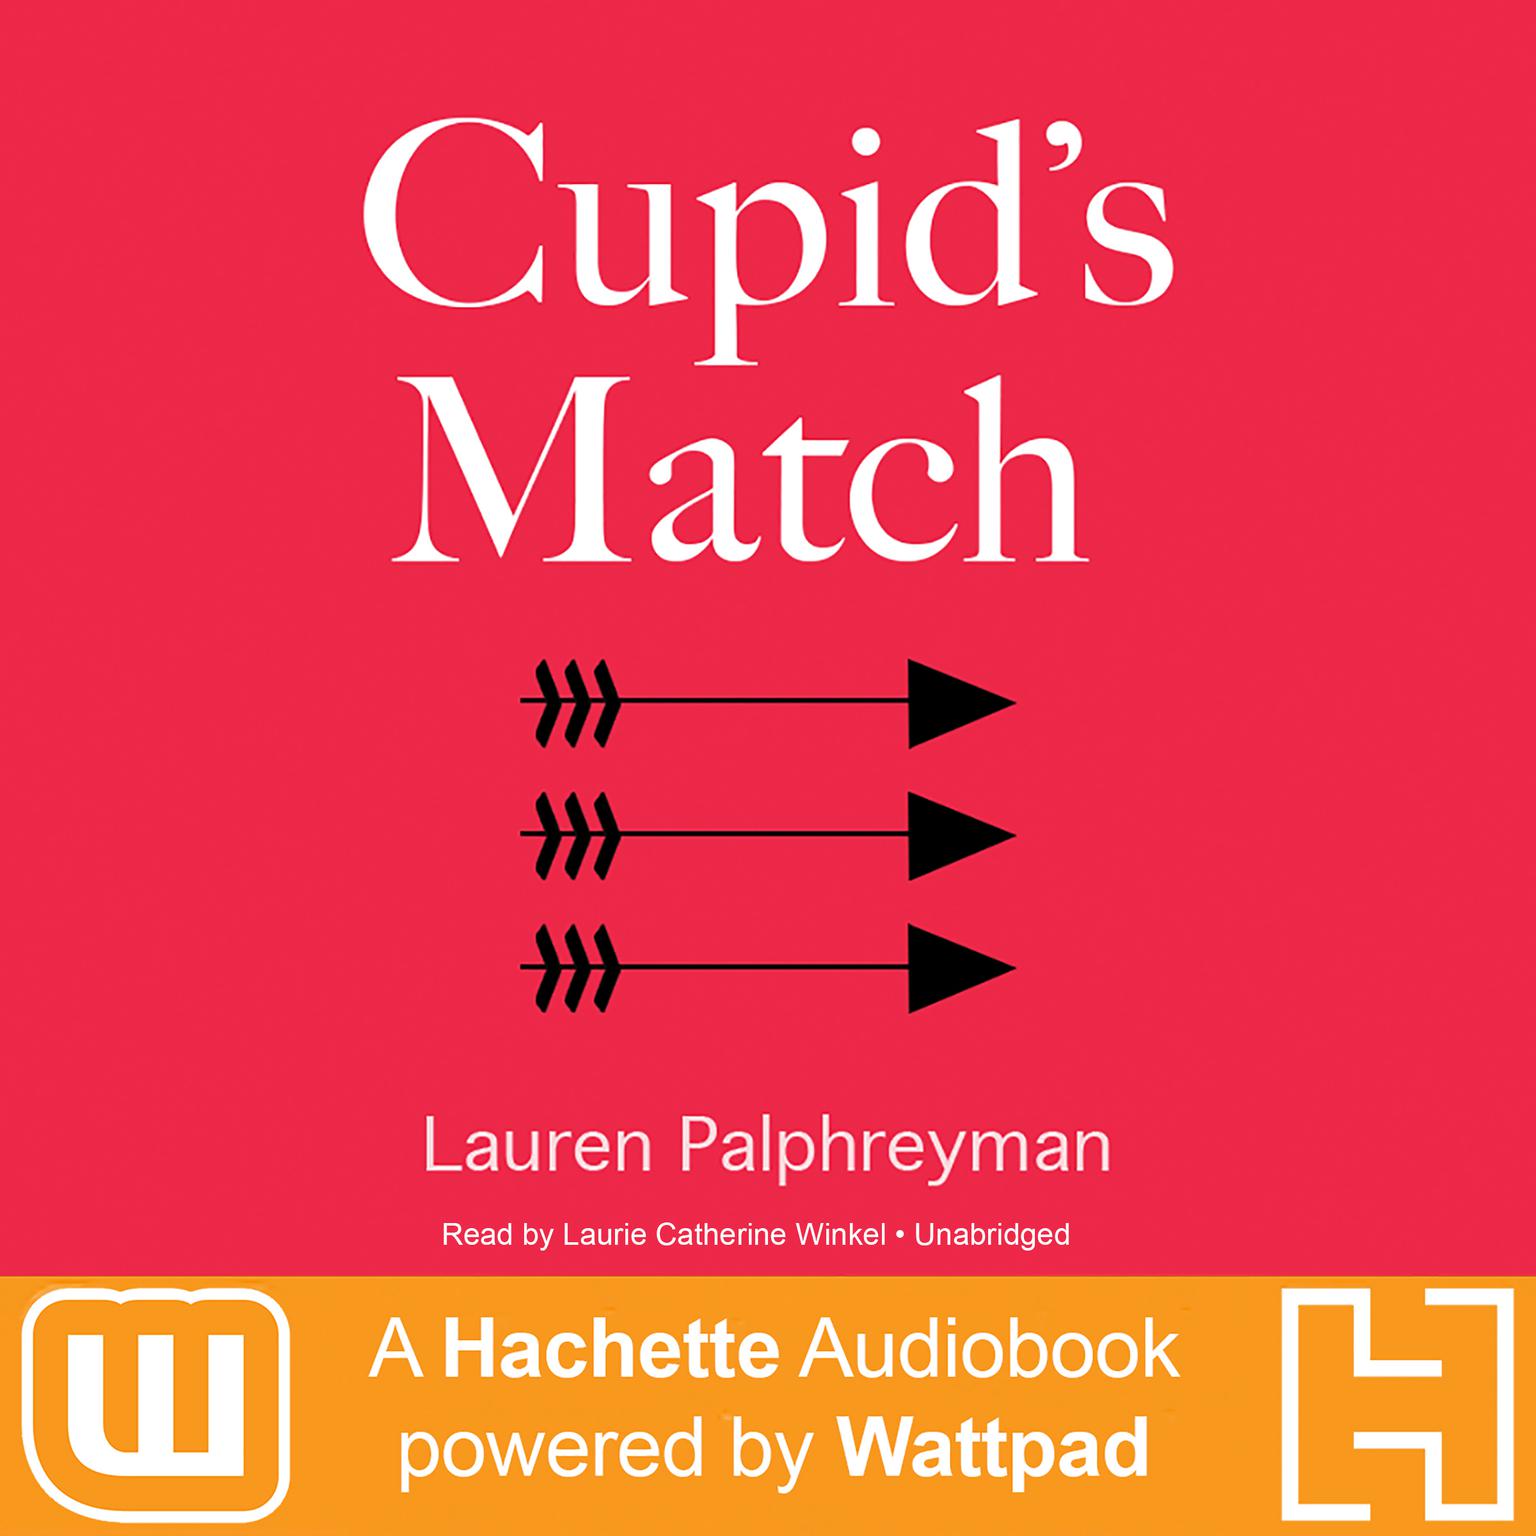 Cupids Match: A Hachette Audiobook powered by Wattpad Production Audiobook, by Lauren Palphreyman